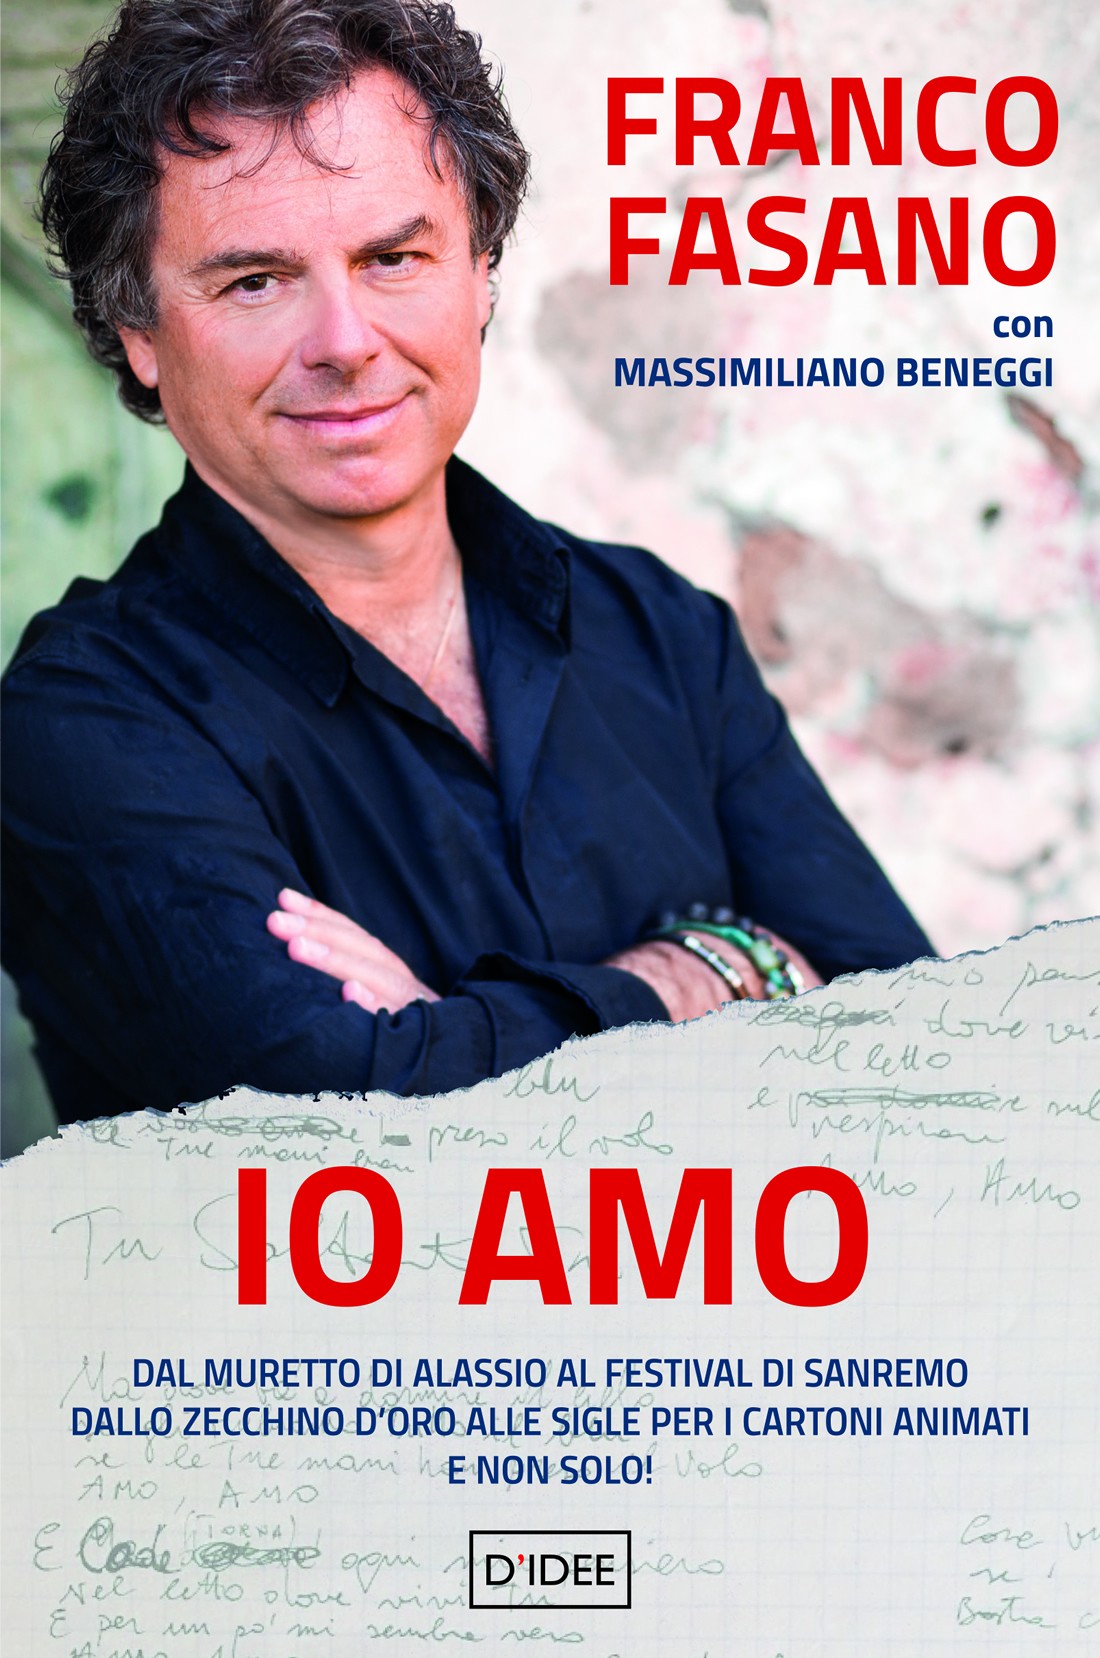 Franco Fasano all'Antoniano per presentare il libro "Io Amo"